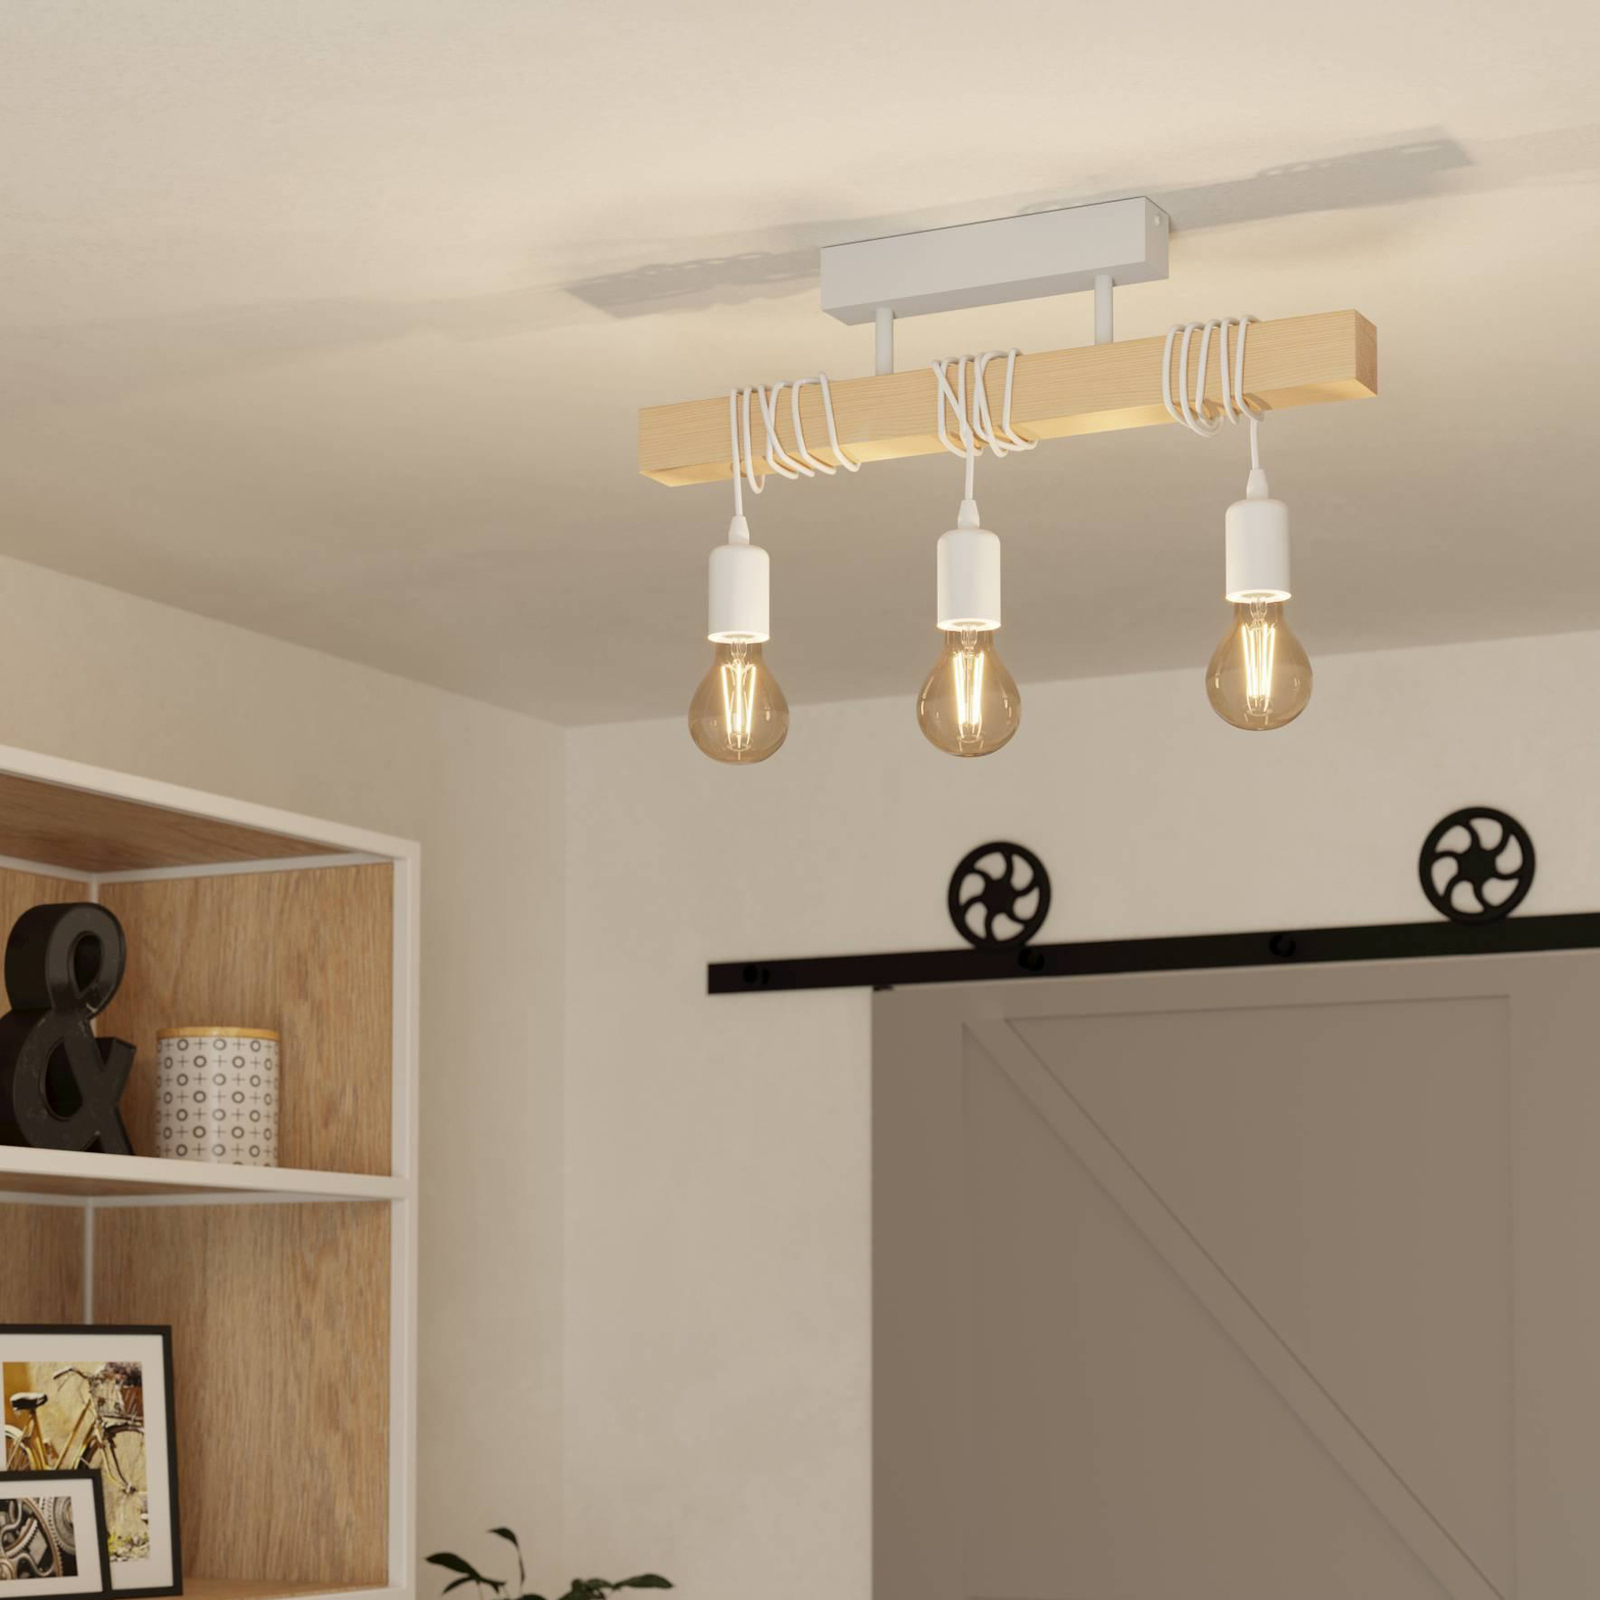 Townshend ceiling light, length 55 cm, white/oak, 3-bulb.